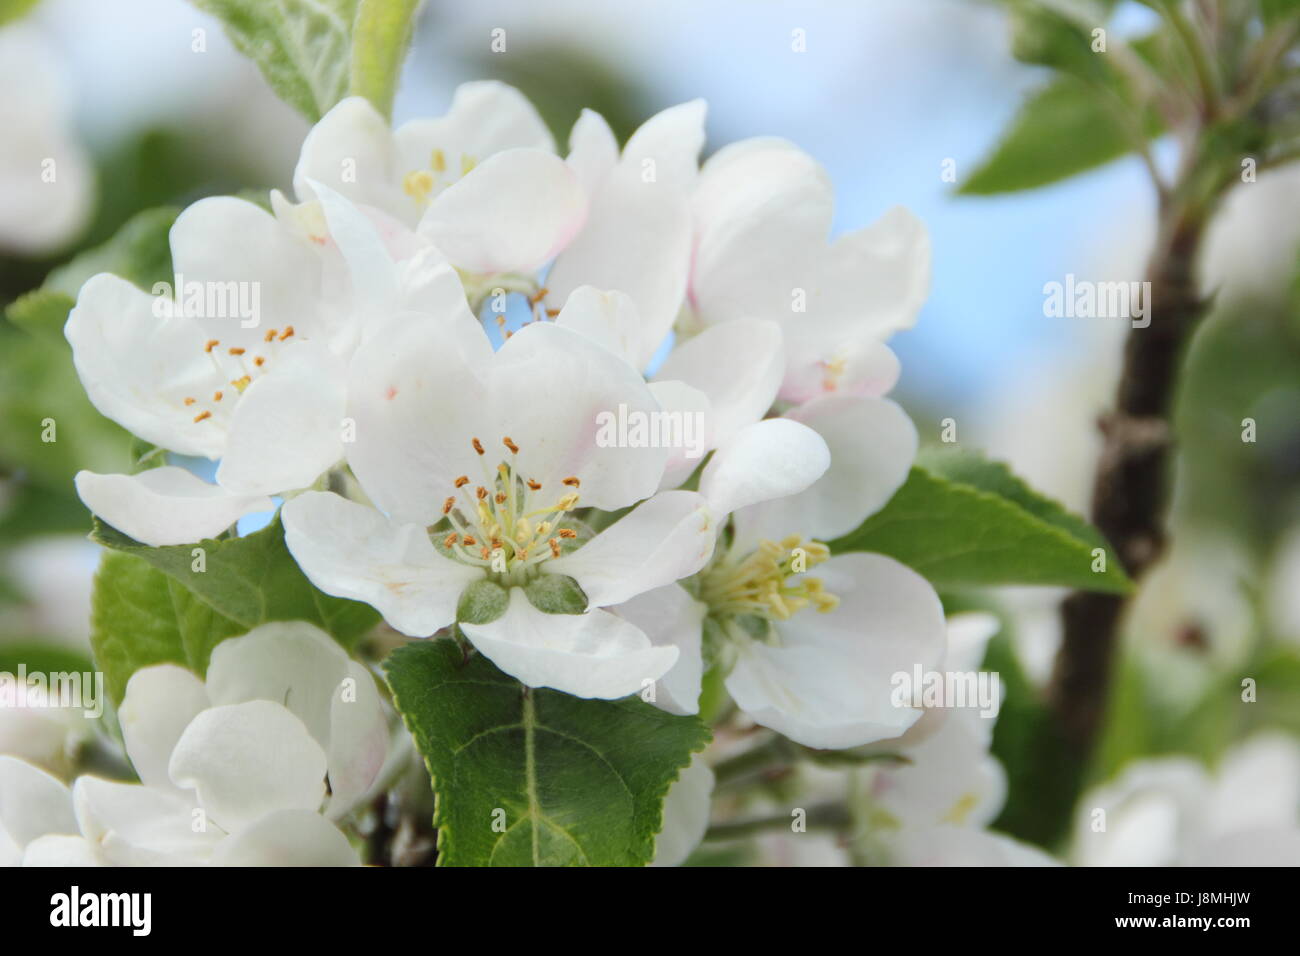 Malus domestica 'scoperta' albero della mela in piena fioritura in un frutteto in inglese su una soleggiata giornata di primavera, England, Regno Unito Foto Stock